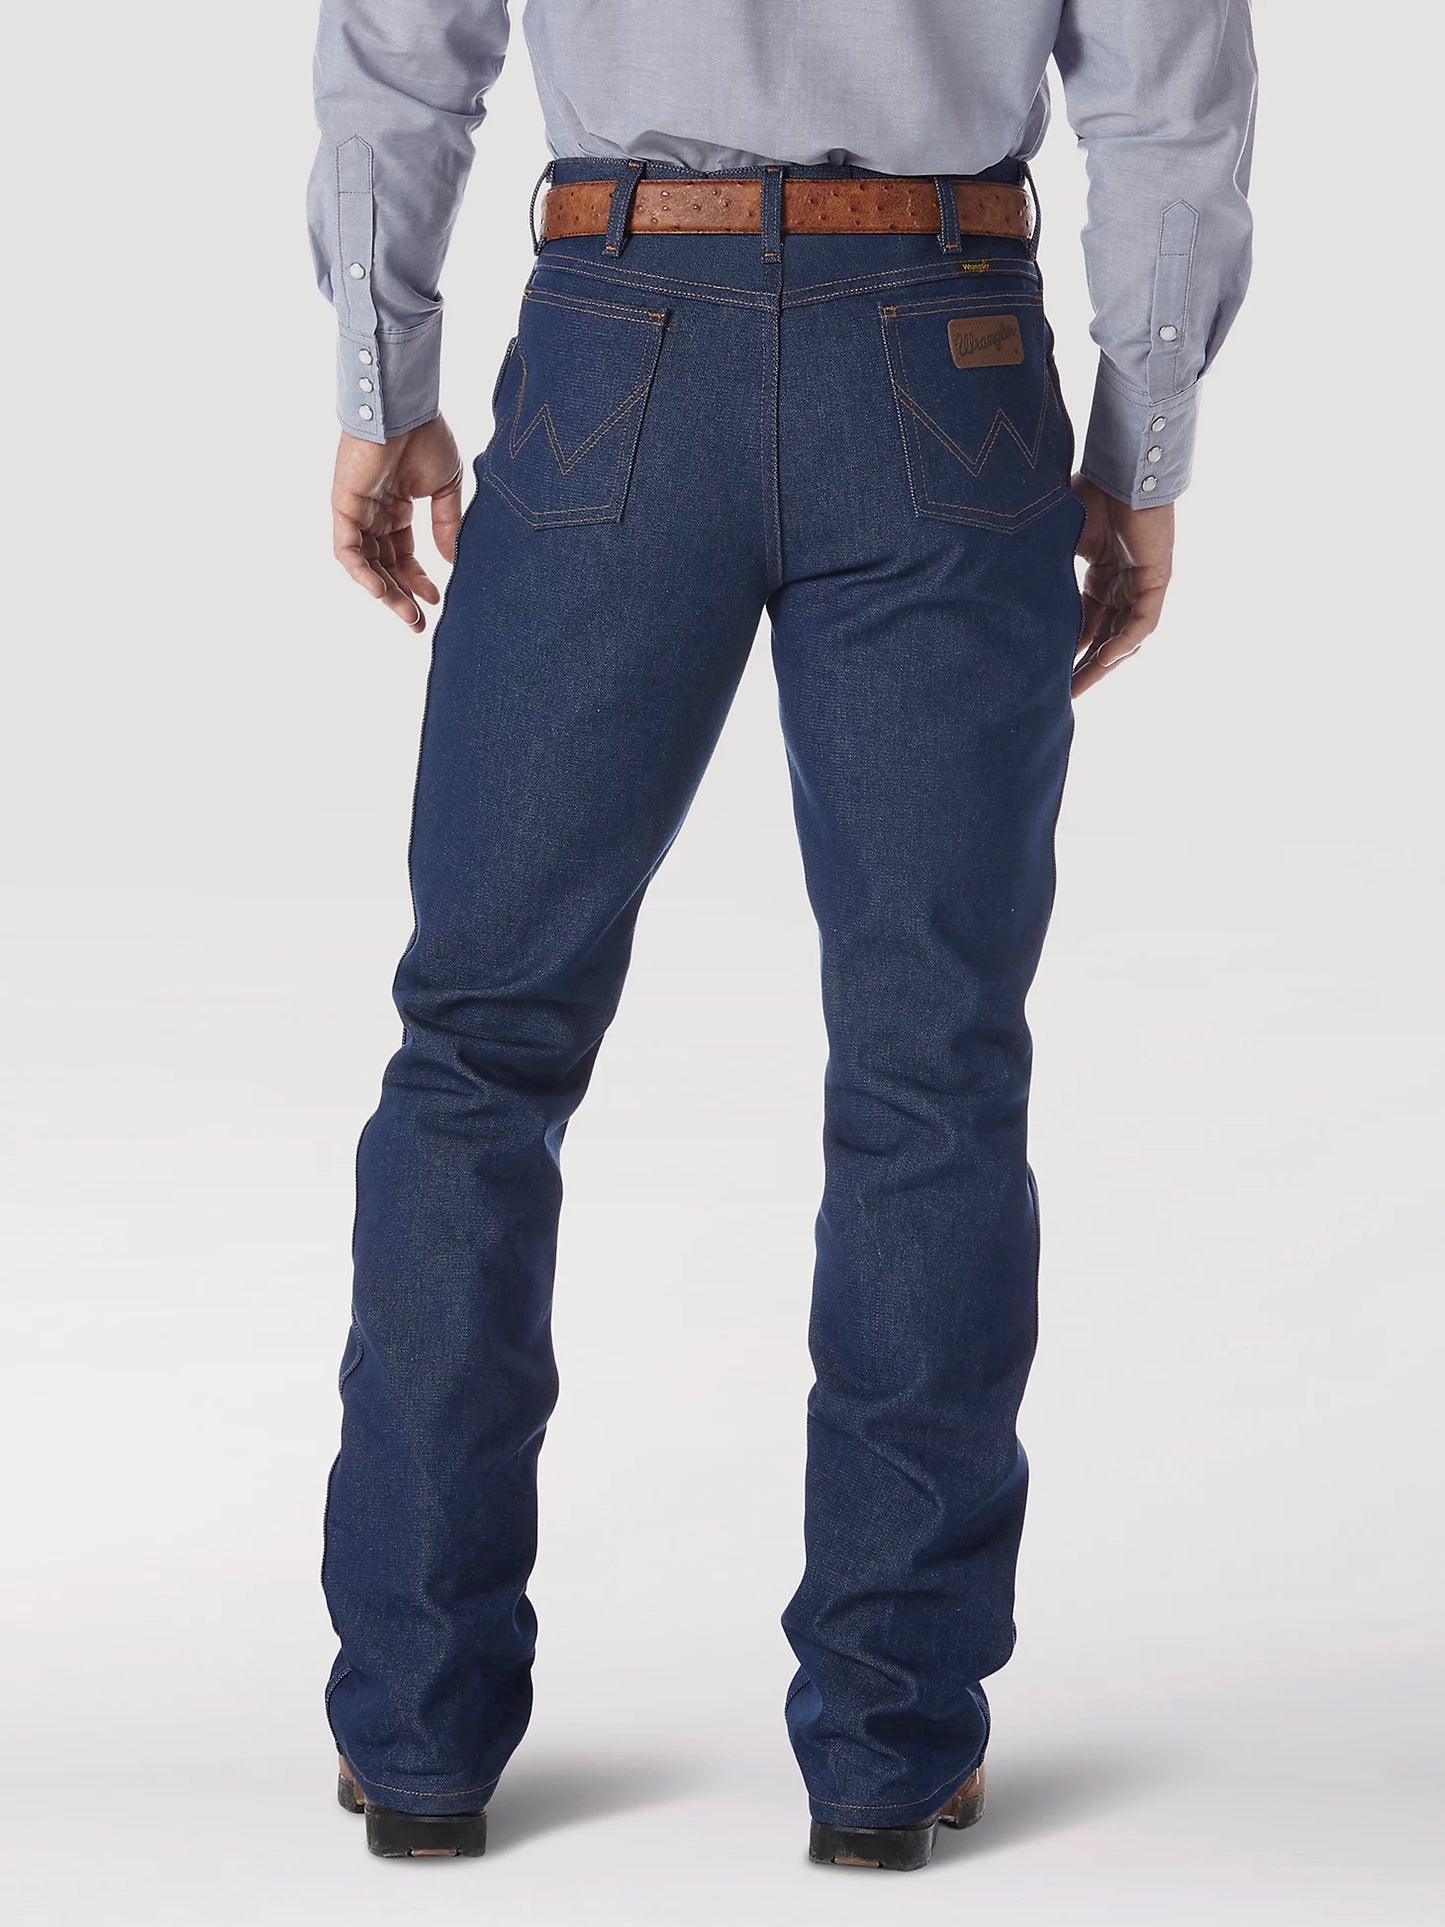 Men's Wrangler Boot Cut Jeans